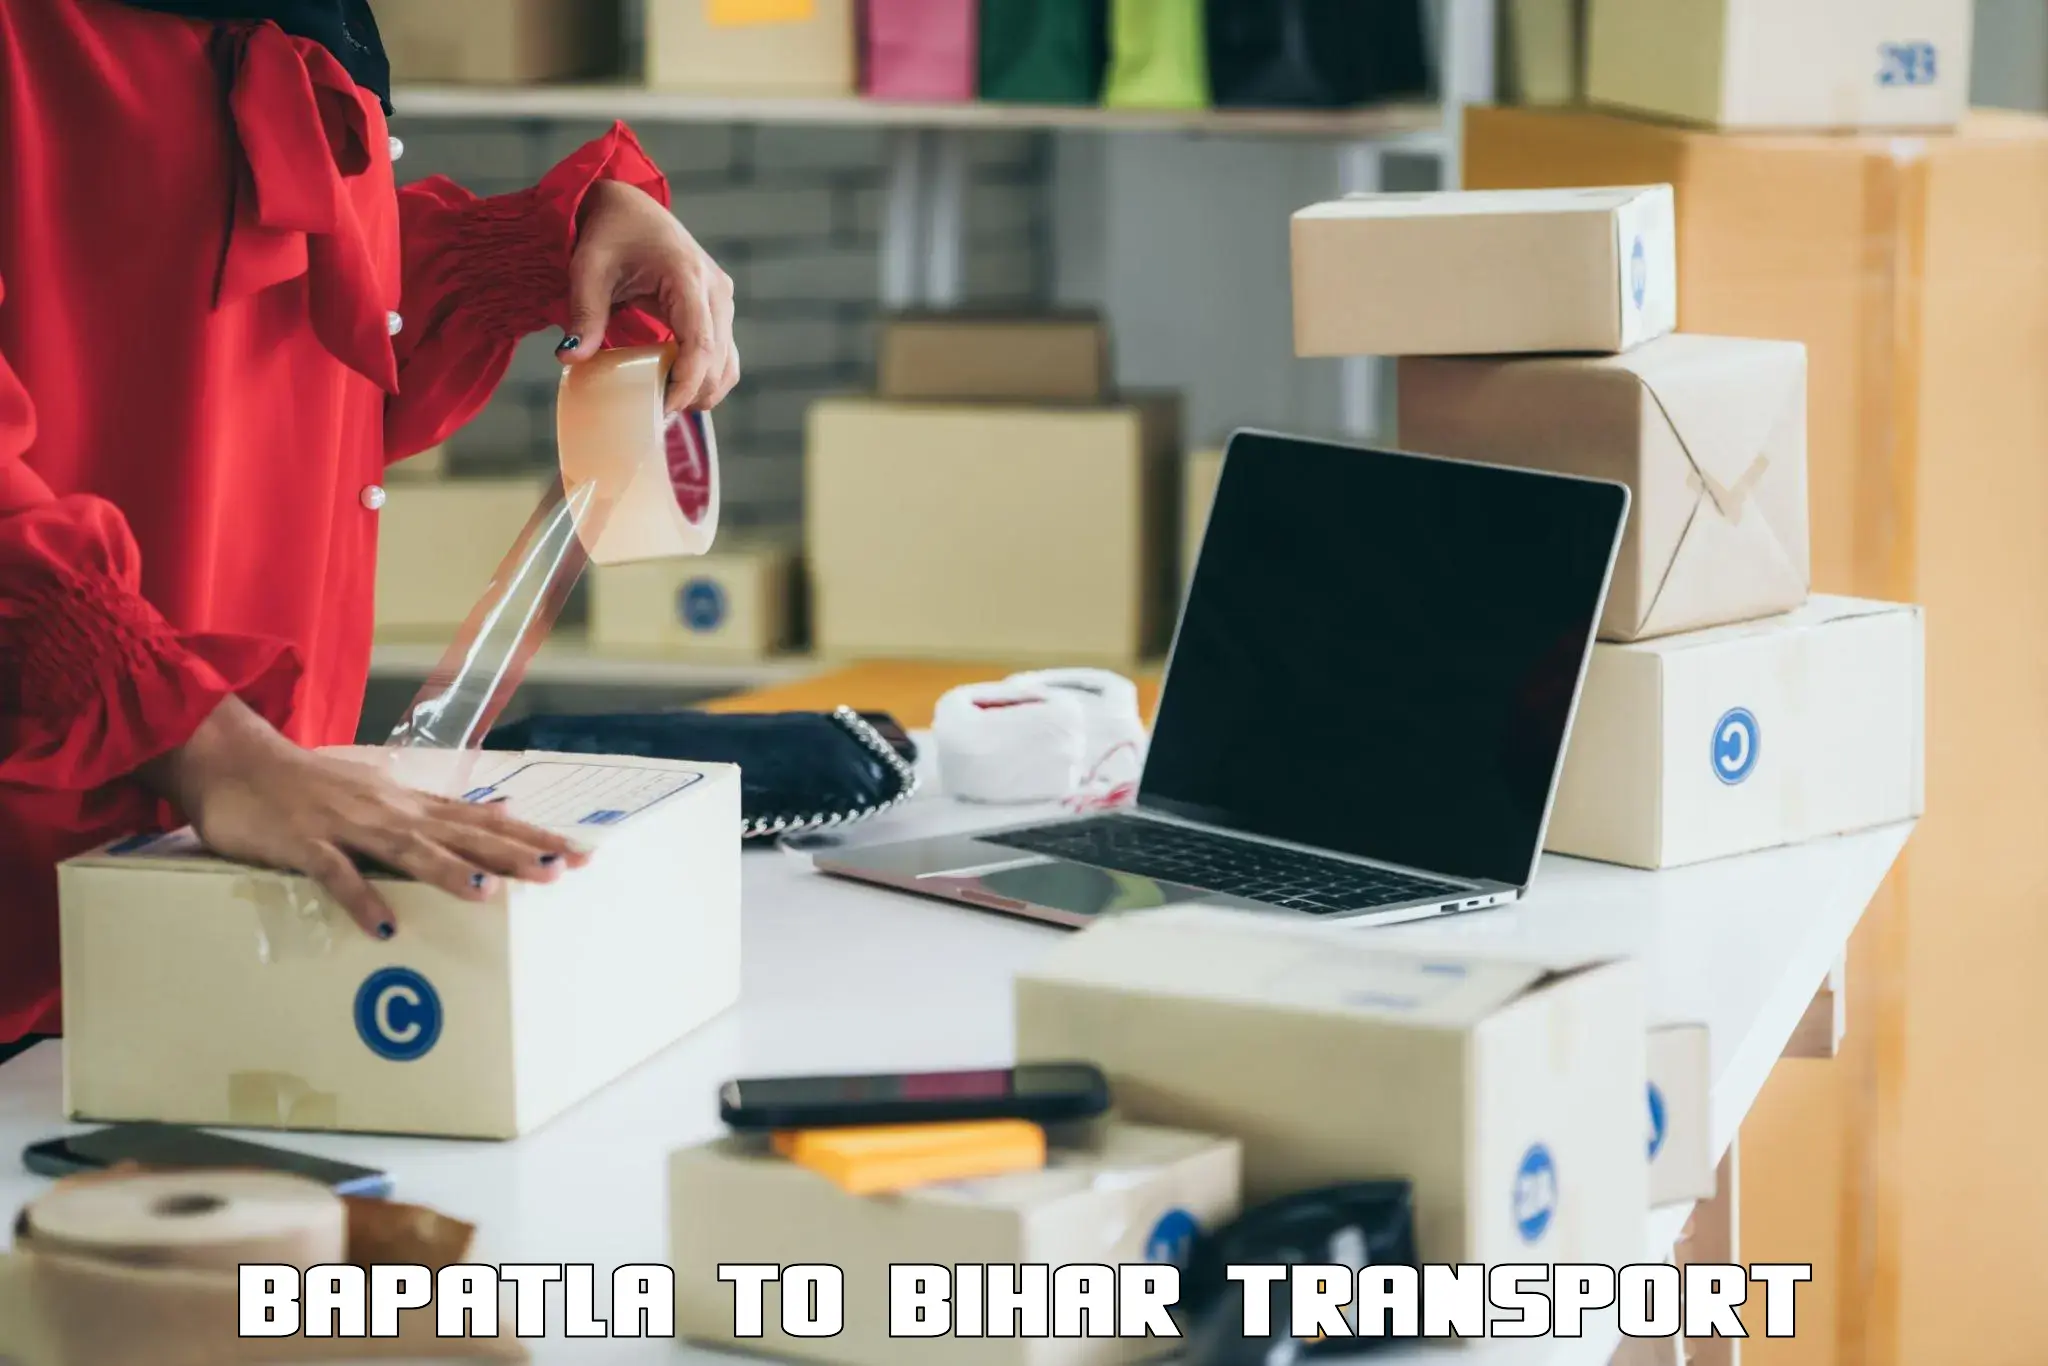 Container transport service Bapatla to Sitamarhi